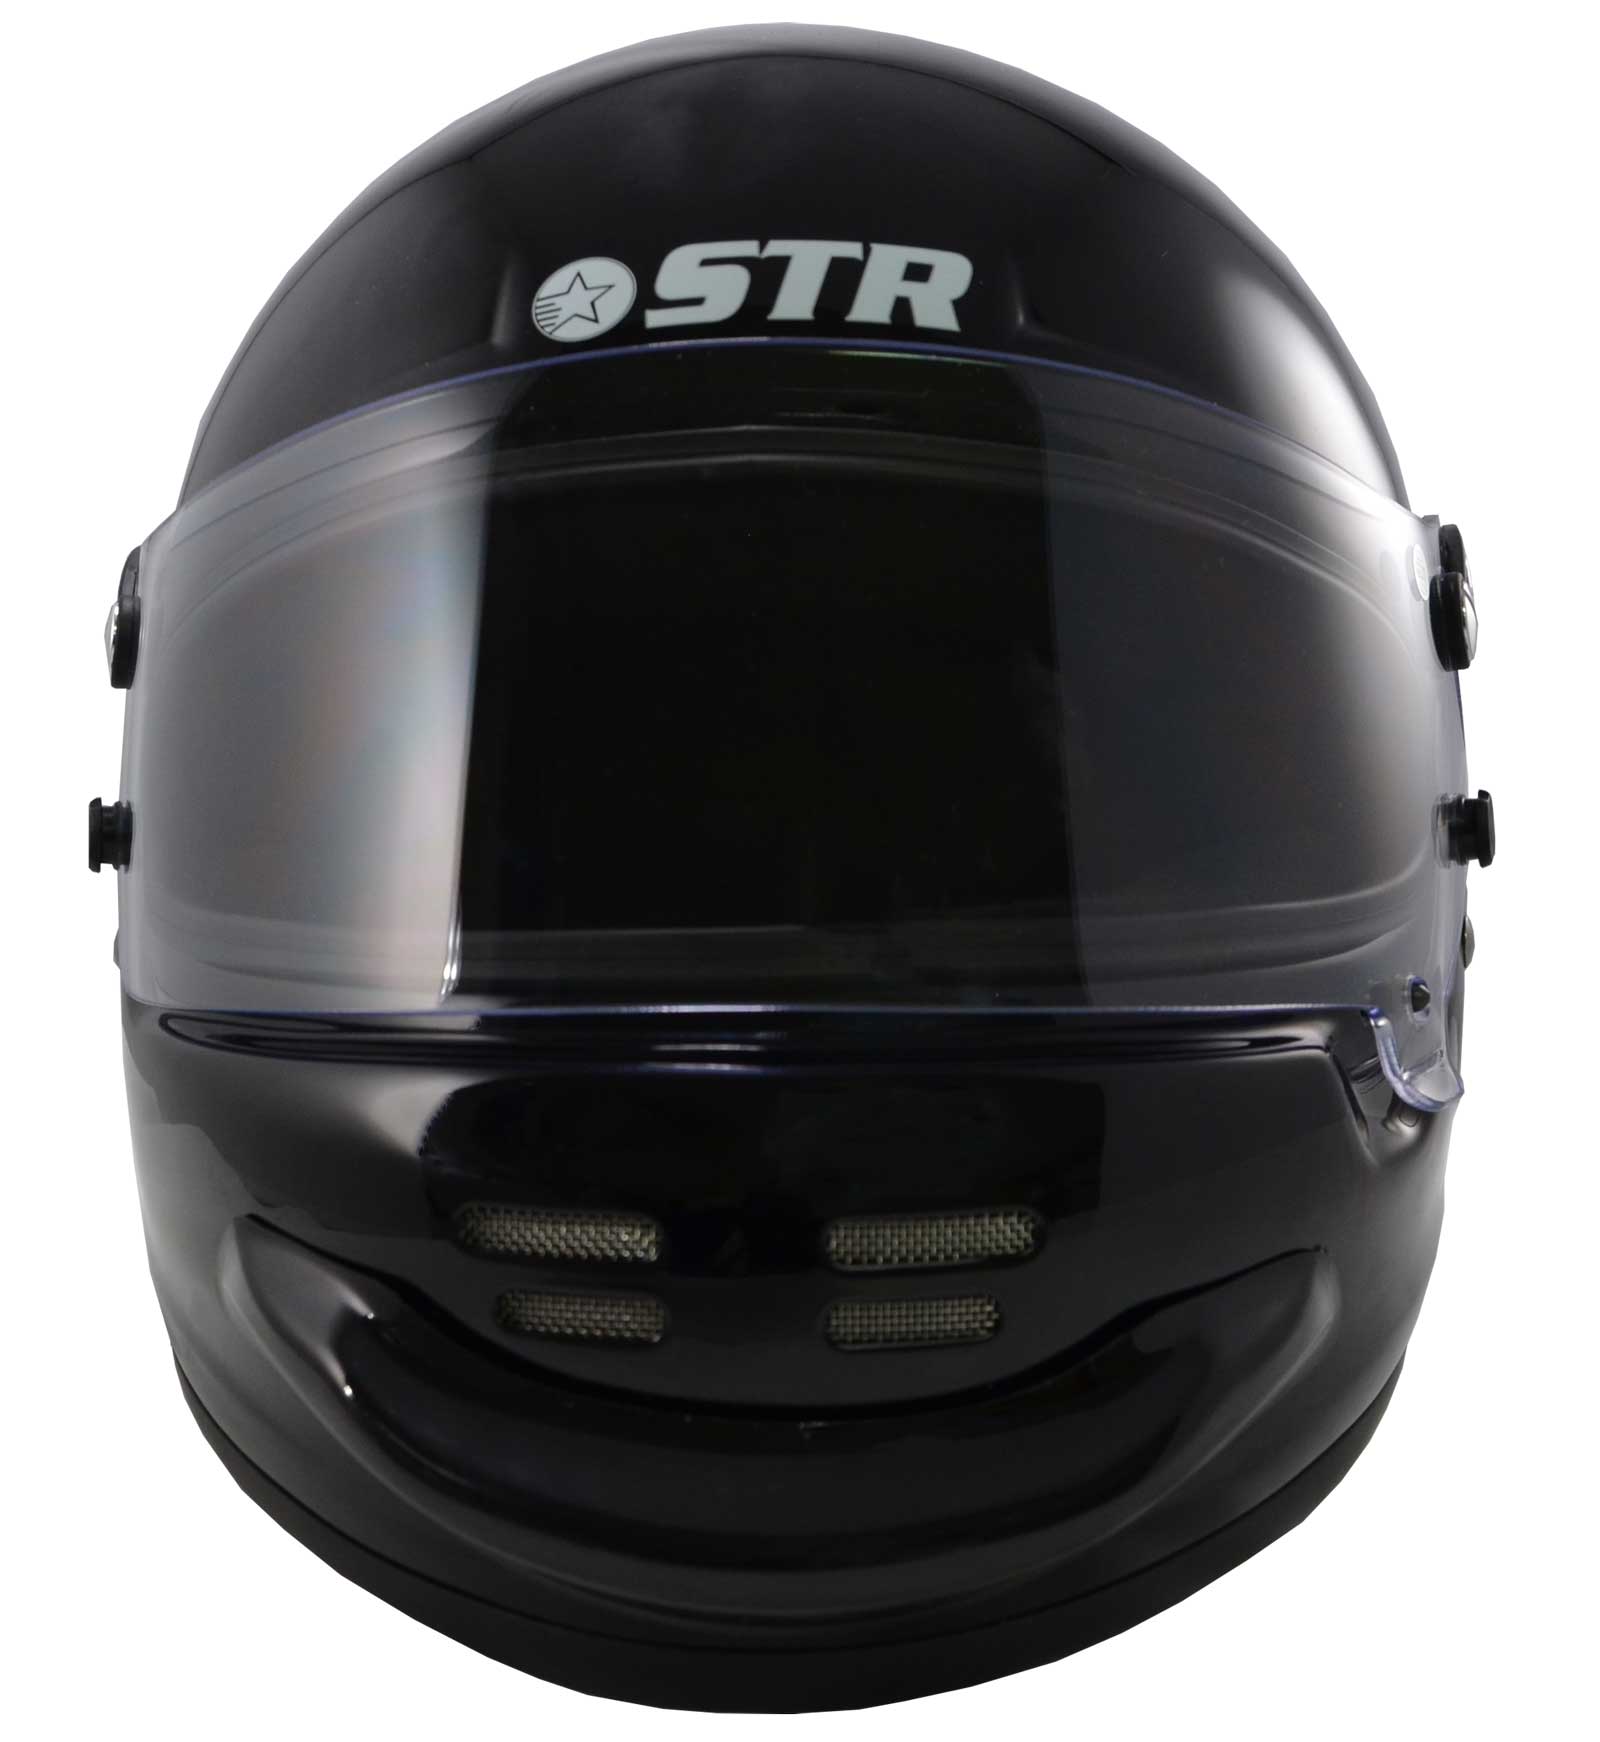 STR SR-2 Aero Helmet FIA 8859-2015 SA2015 - Black